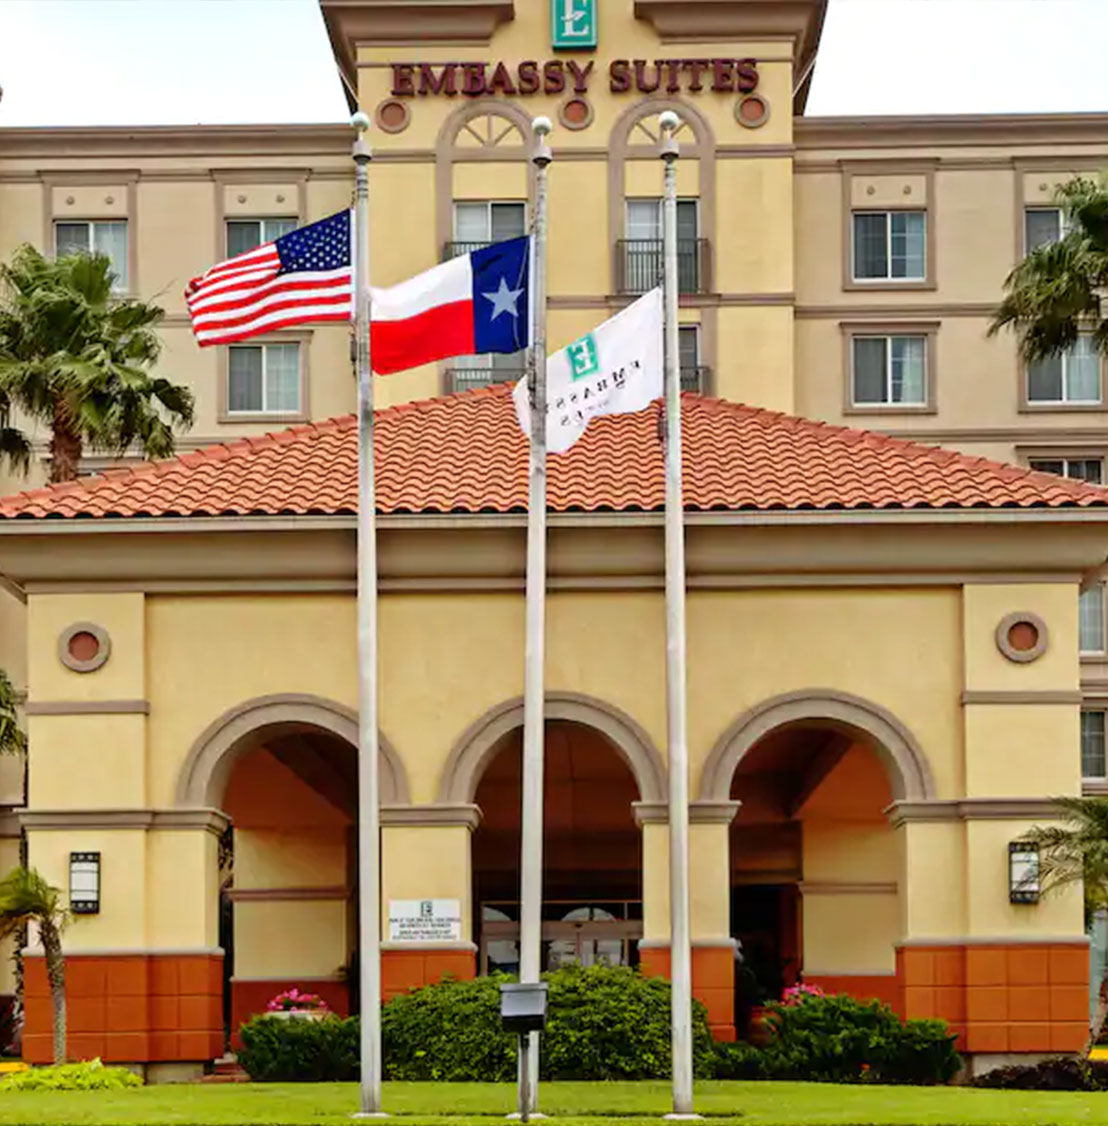 embassy suites laredo texas exterior